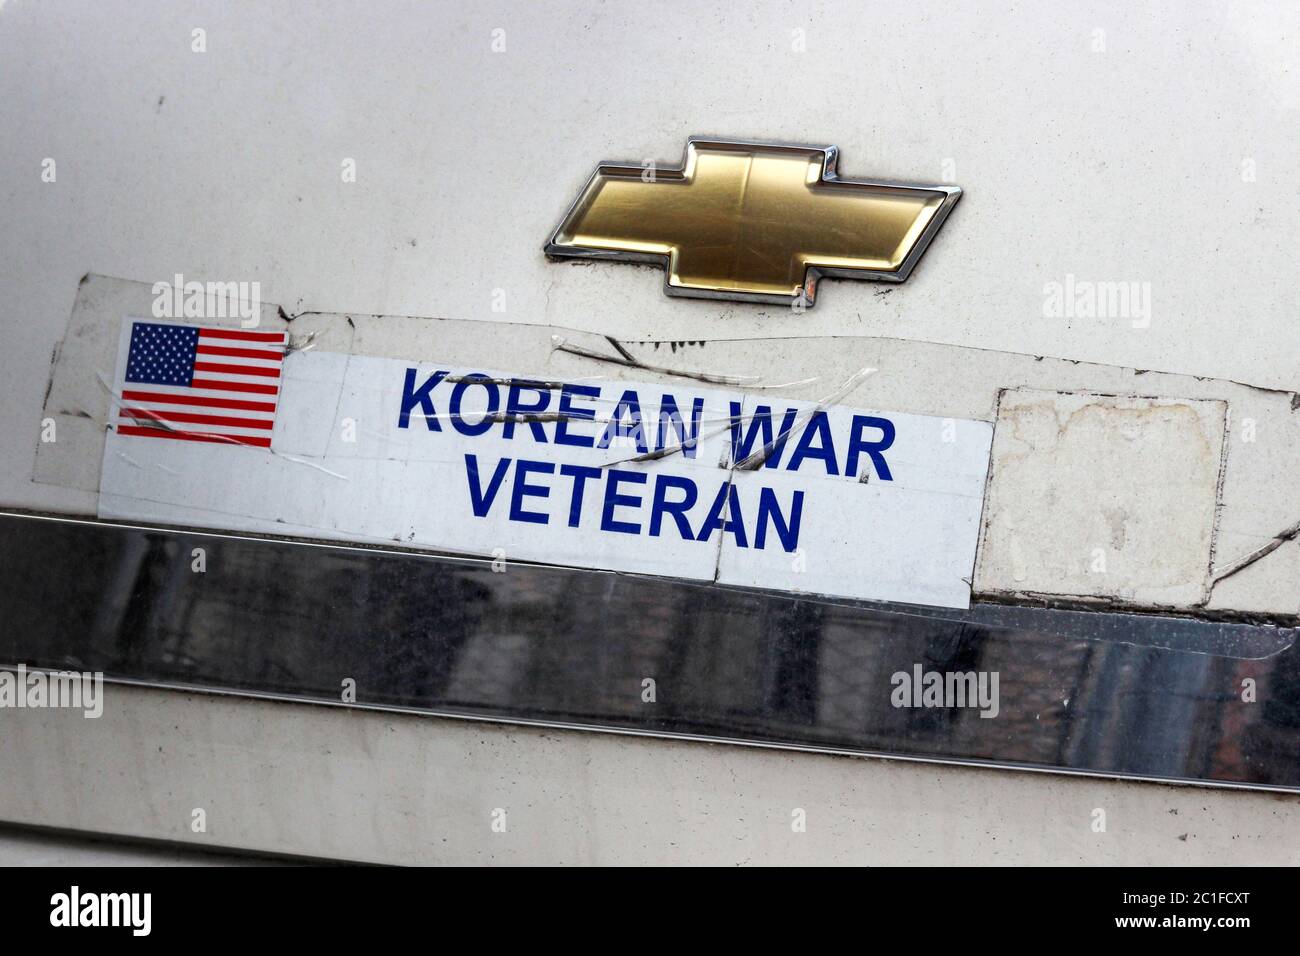 Ancien combattant de la guerre de Corée. Autocollant apposé sur le coffre ou le hayon Chevrolet. États-Unis d'Amérique. Banque D'Images